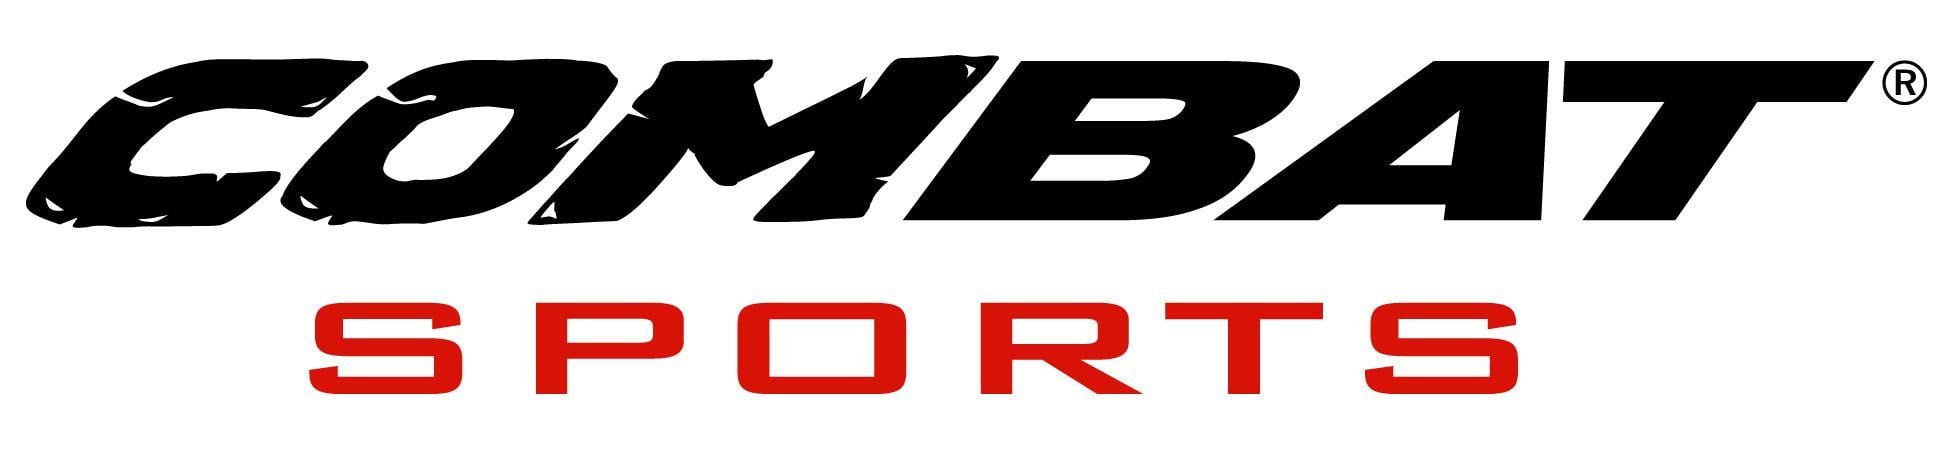 Combat Baseball Logo - Register to Win a Brand New ComBat B1 Big Barrel Bat!